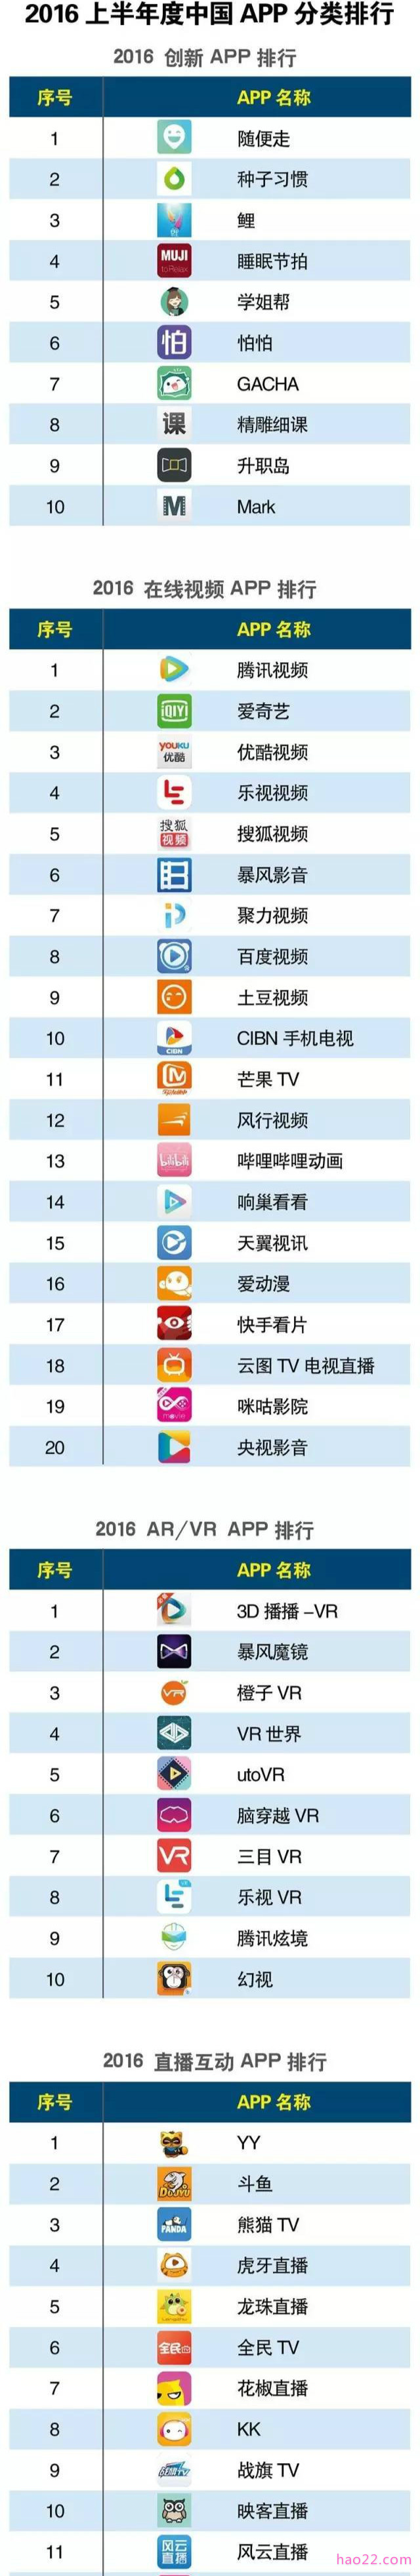 2016中国在线视频APP应用排行 